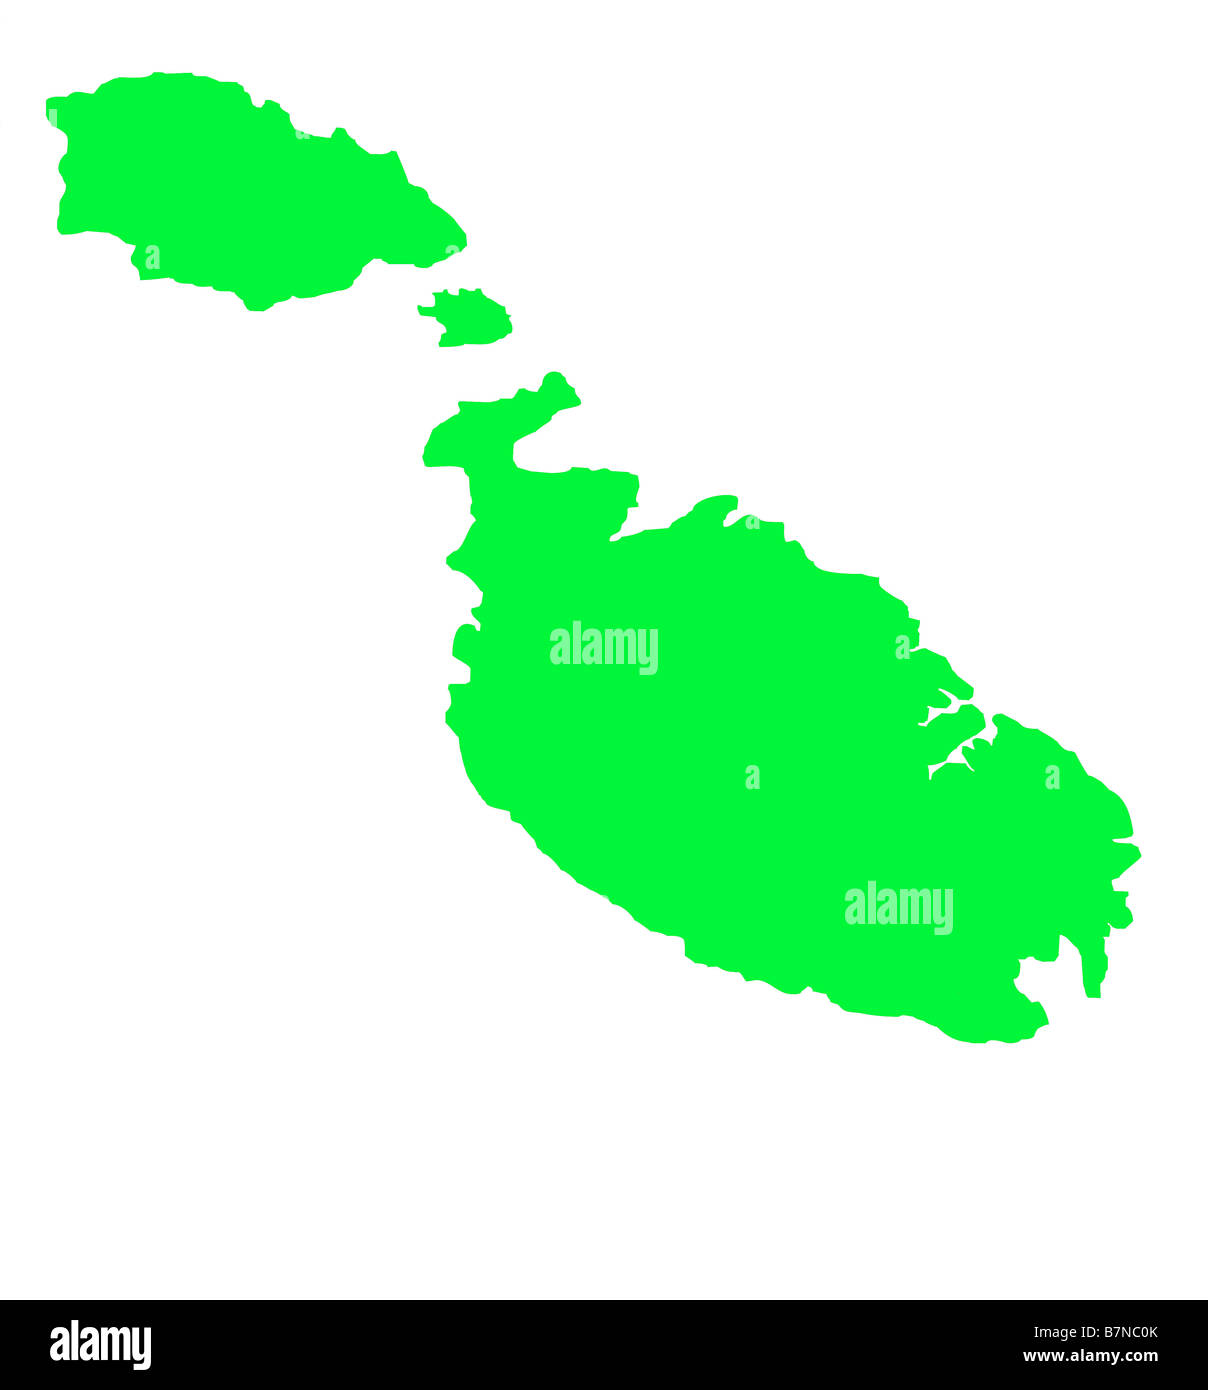 Carte de Malte isolé sur fond blanc avec clipping path Banque D'Images